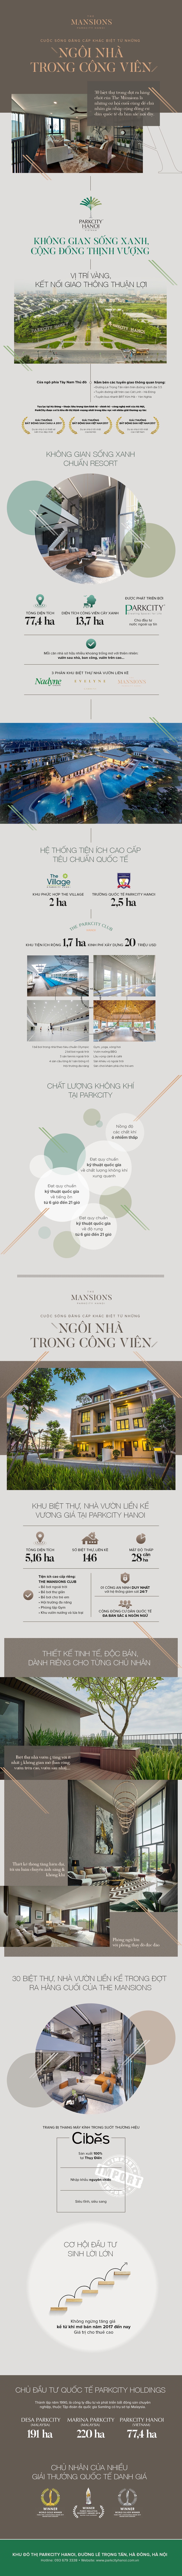 The Mansions ParkCity Hanoi - Cuộc sống đẳng cấp khác biệt từ những ngôi nhà trong công viên - Ảnh 1.